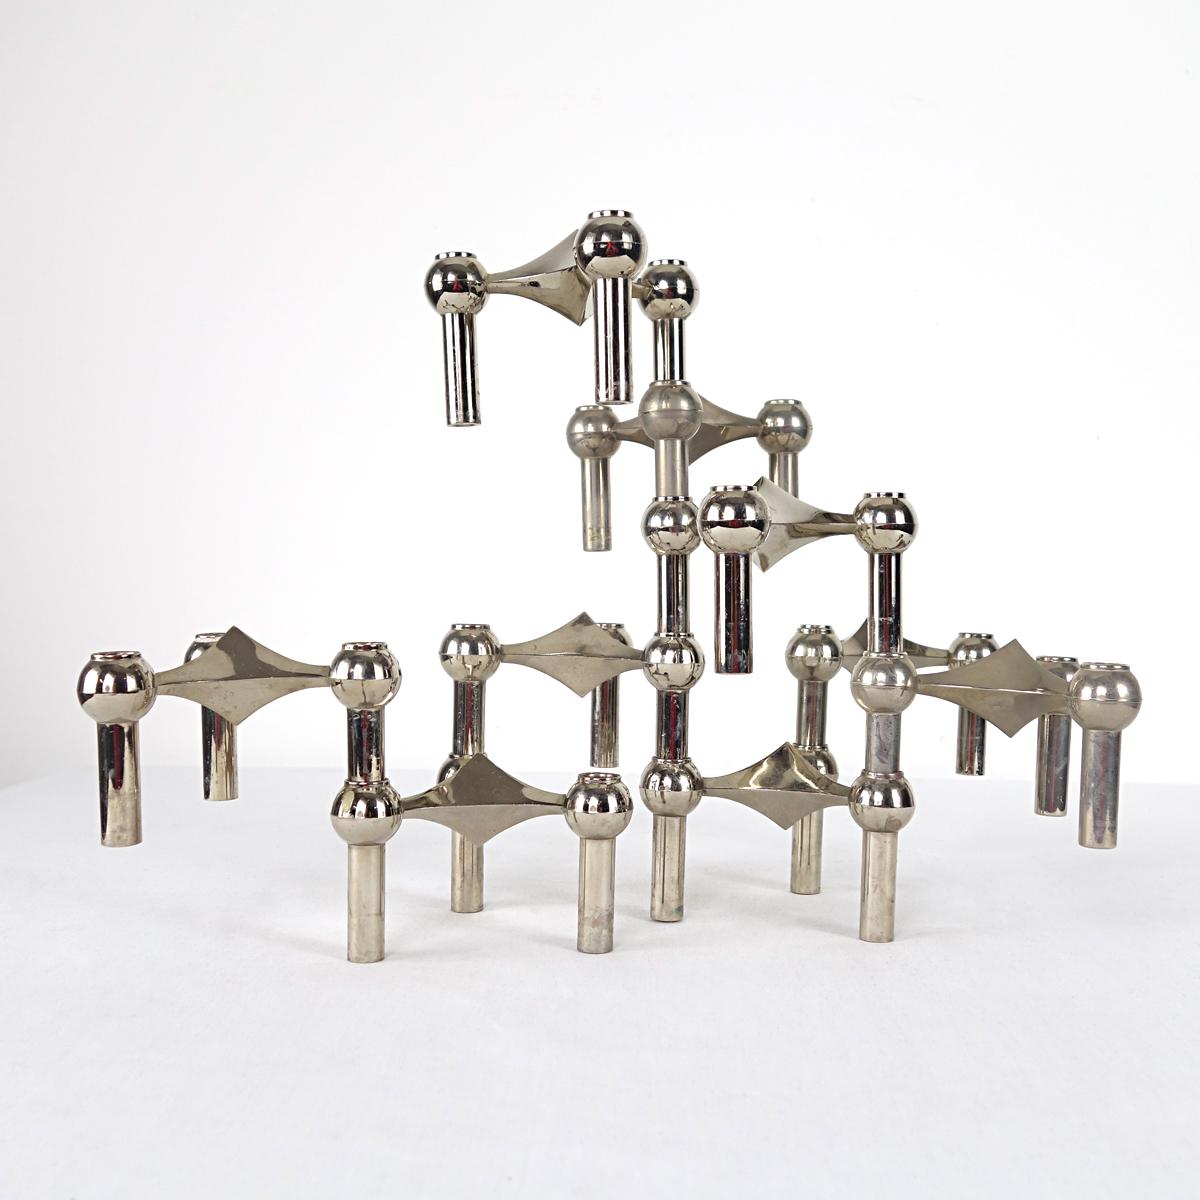 Satz von 9 modularen, dreieckigen, verchromten Kerzenhaltern, hergestellt von BMF in den 1960er Jahren. Die Kerzenständer können in jedem gewünschten Design gestapelt werden.